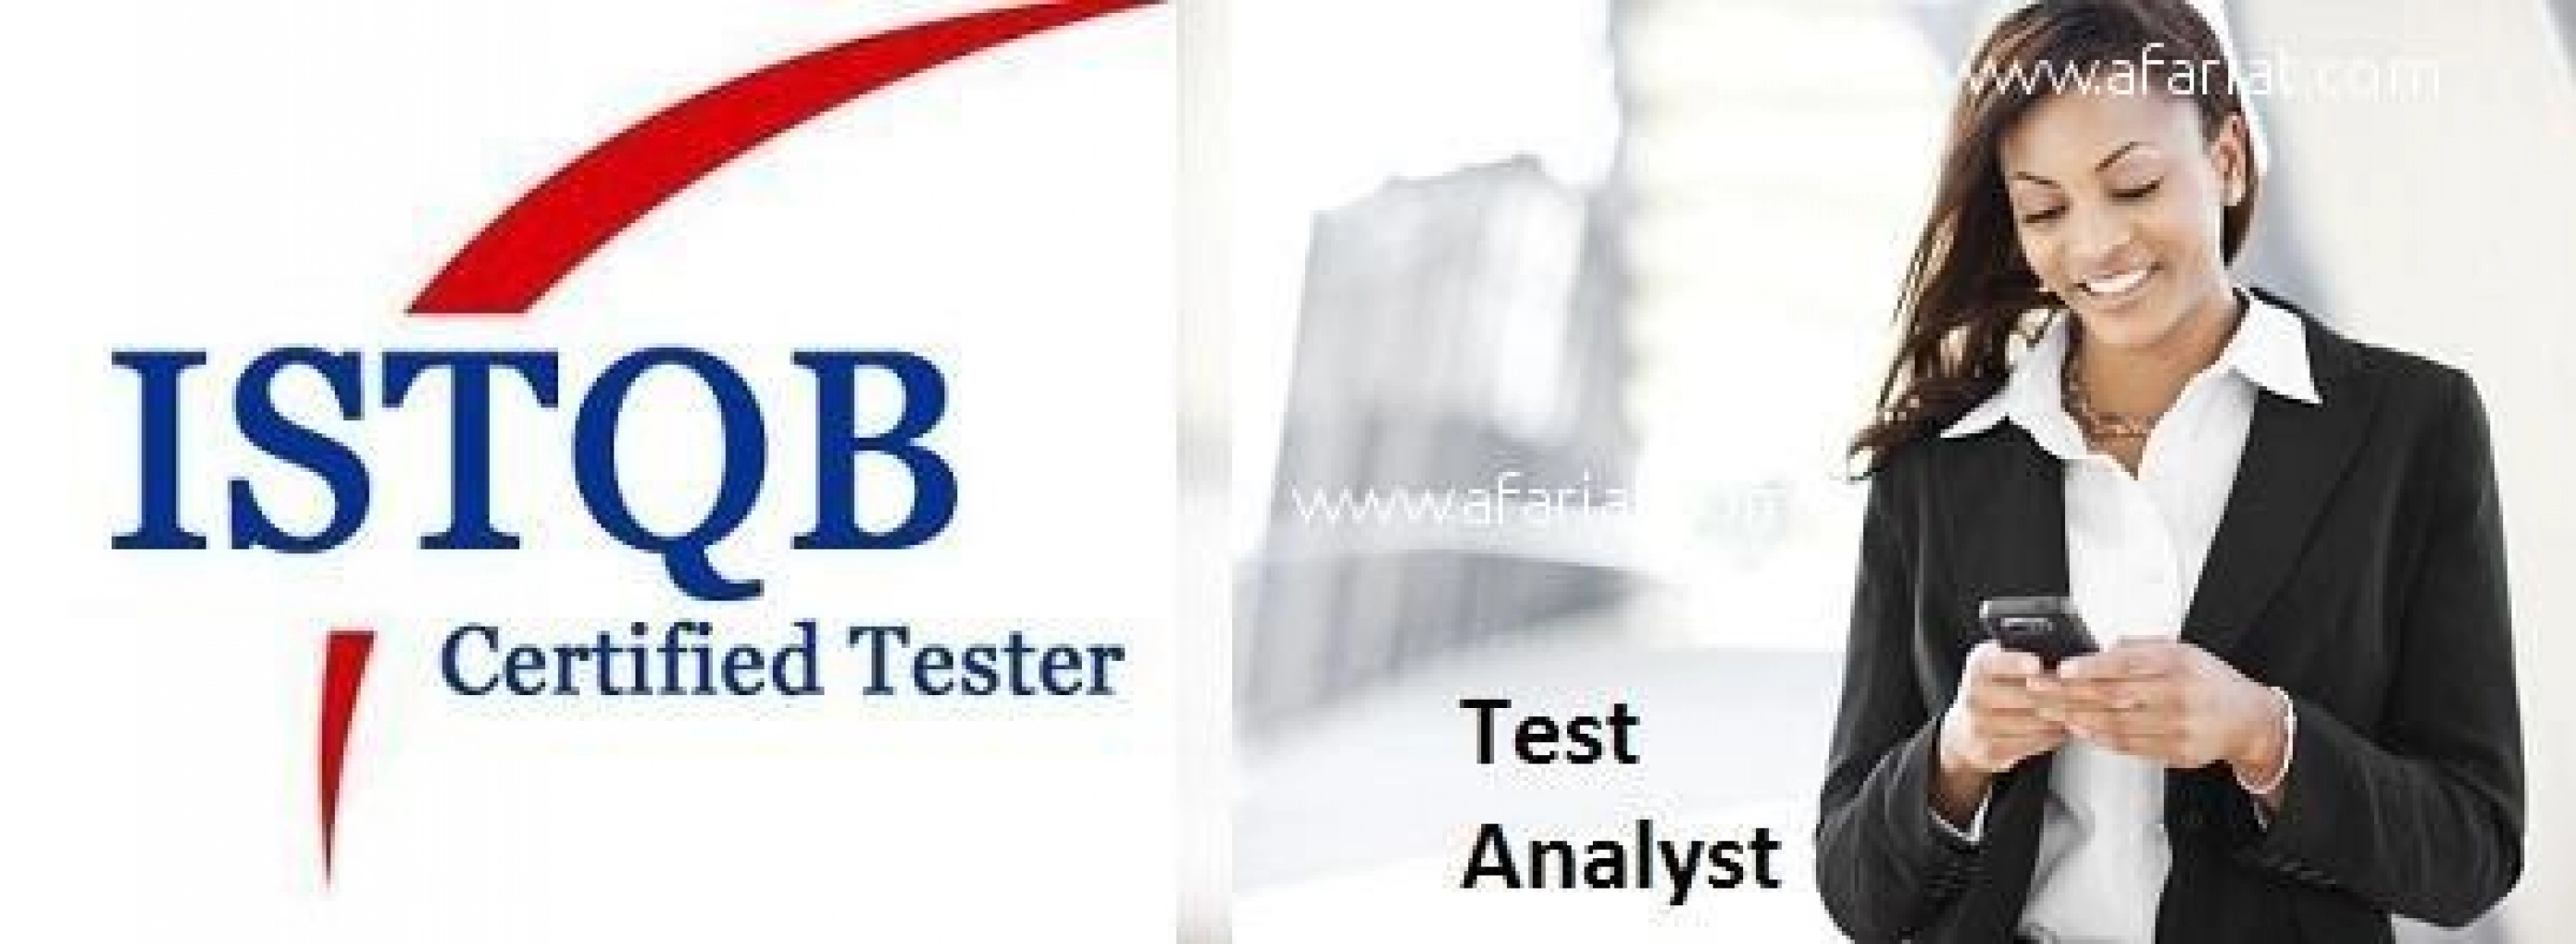 GTEC: Réduction 10% sur la formation Test ISTQB